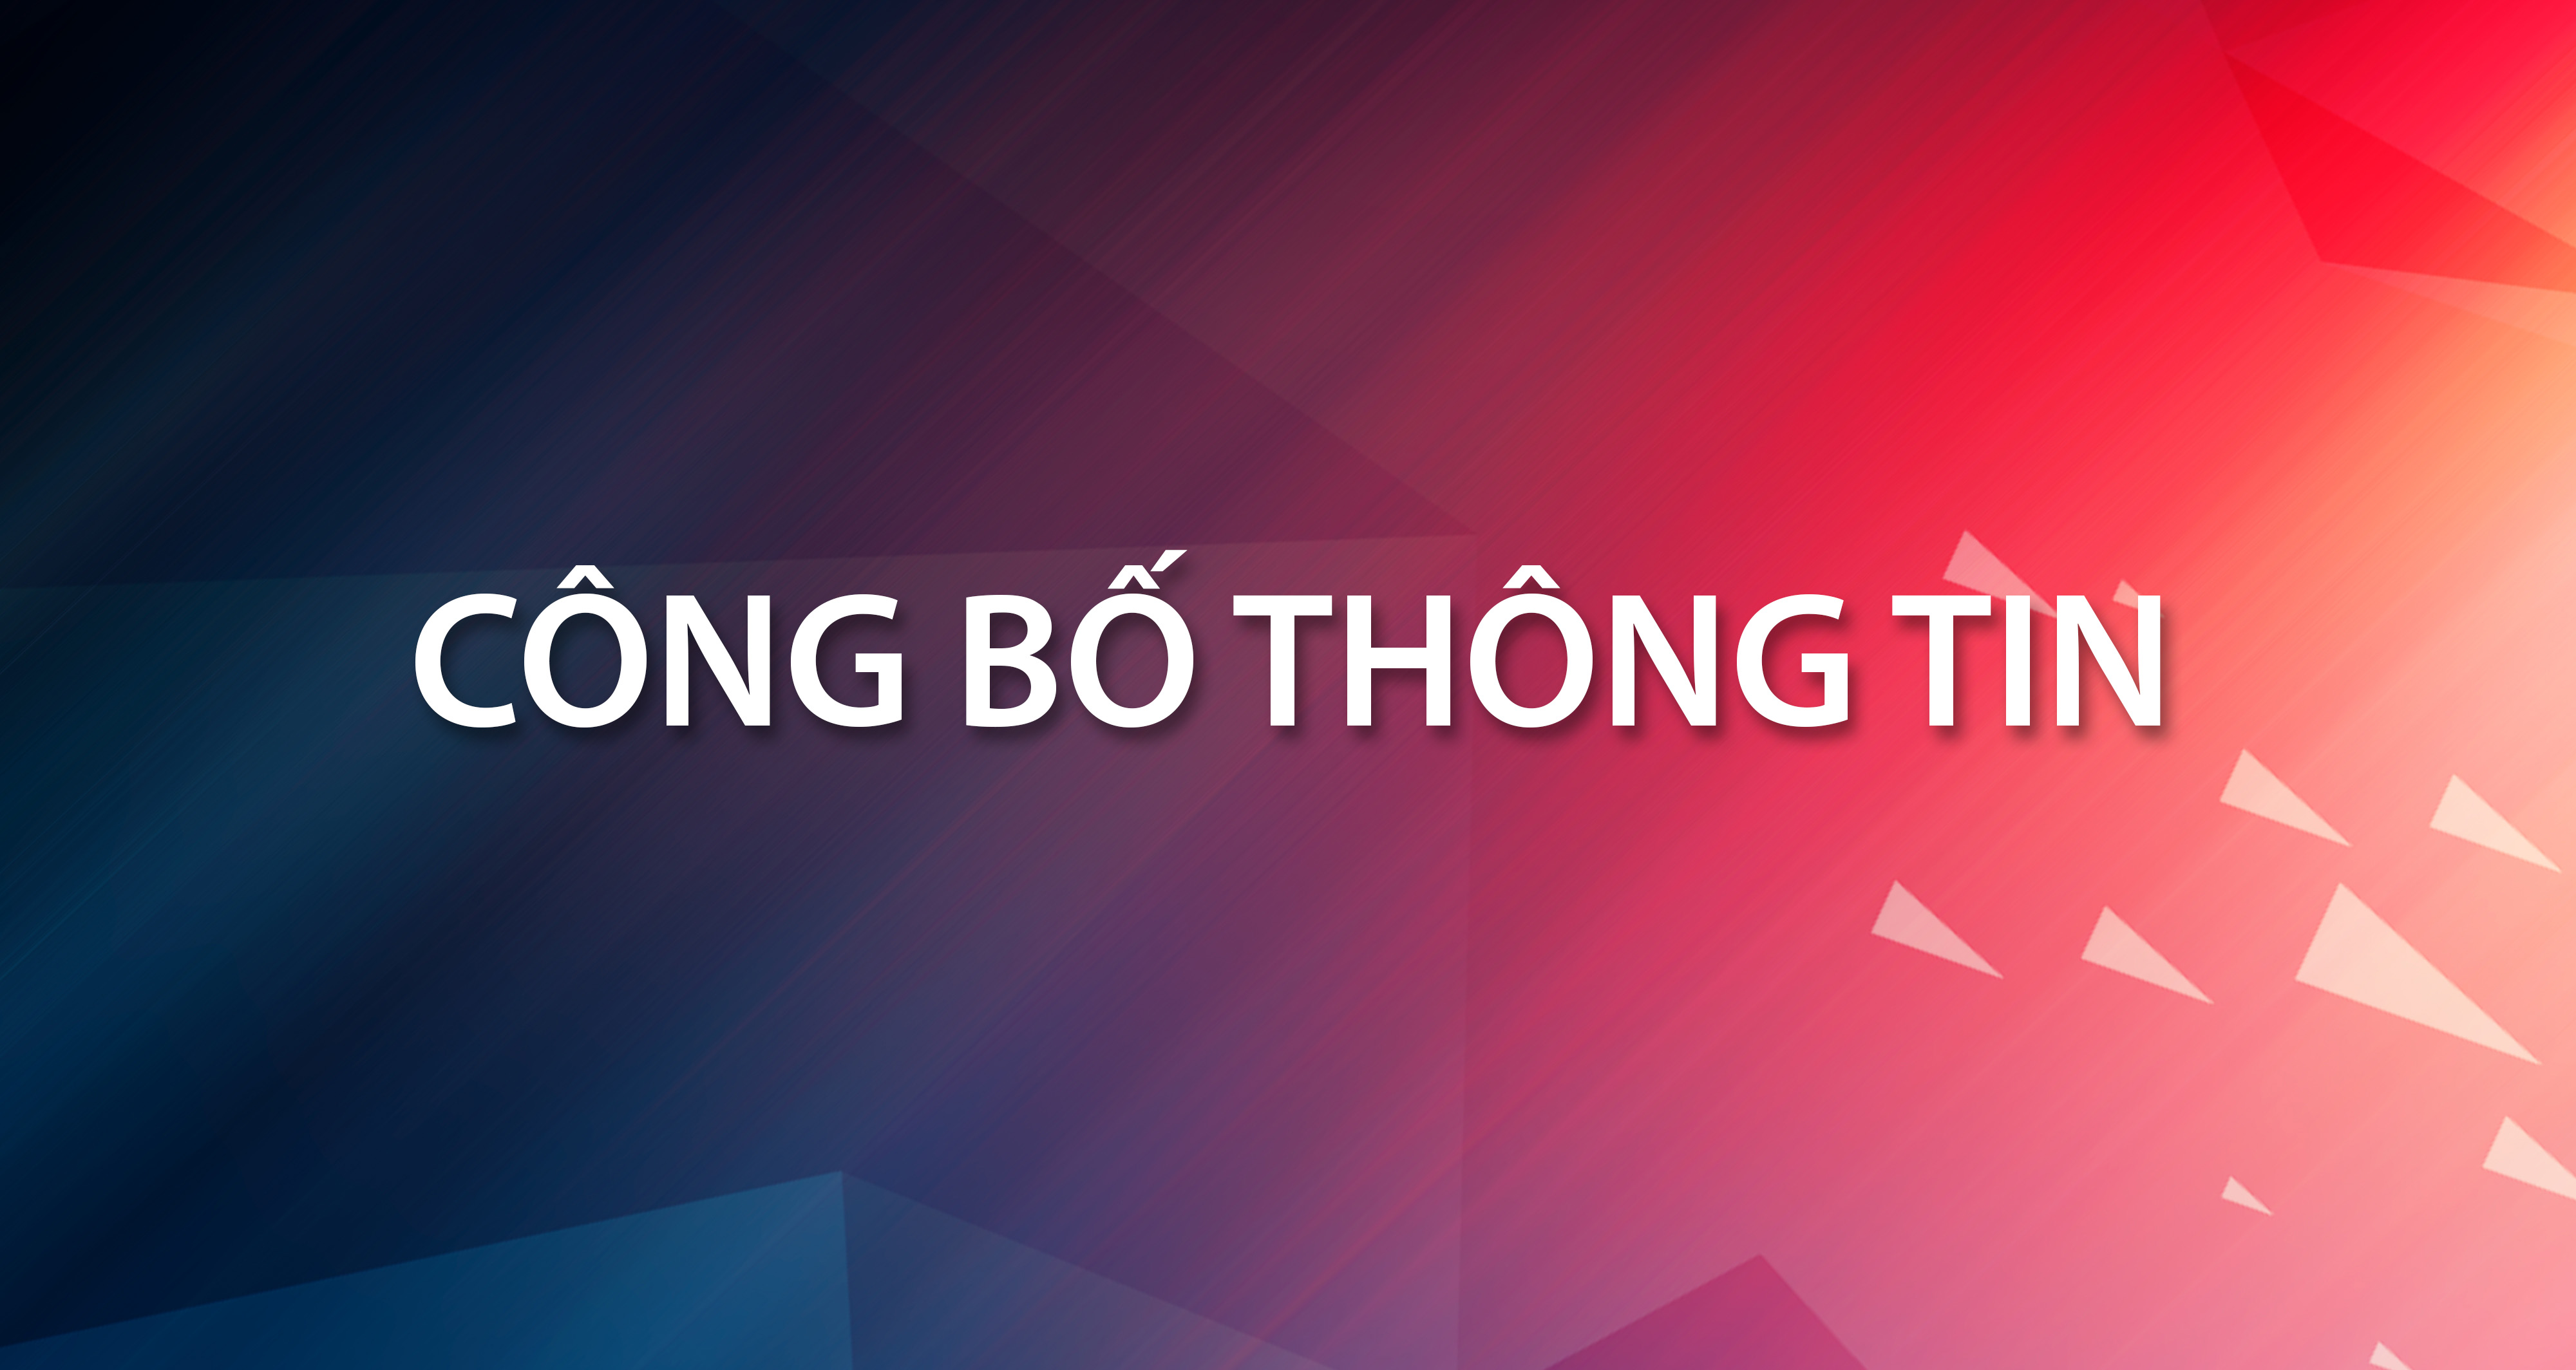 Công bố thông tin về kết quả thẩm định năng lực Nhà đầu tư tham gia đấu giá theo lô cổ phần Công ty cổ phần Đầu tư và Phát triển Công nghệ Văn Lang thuộc sở hữu của Công ty TNHH MTV Nhà xuất bản Giáo dục Việt Nam